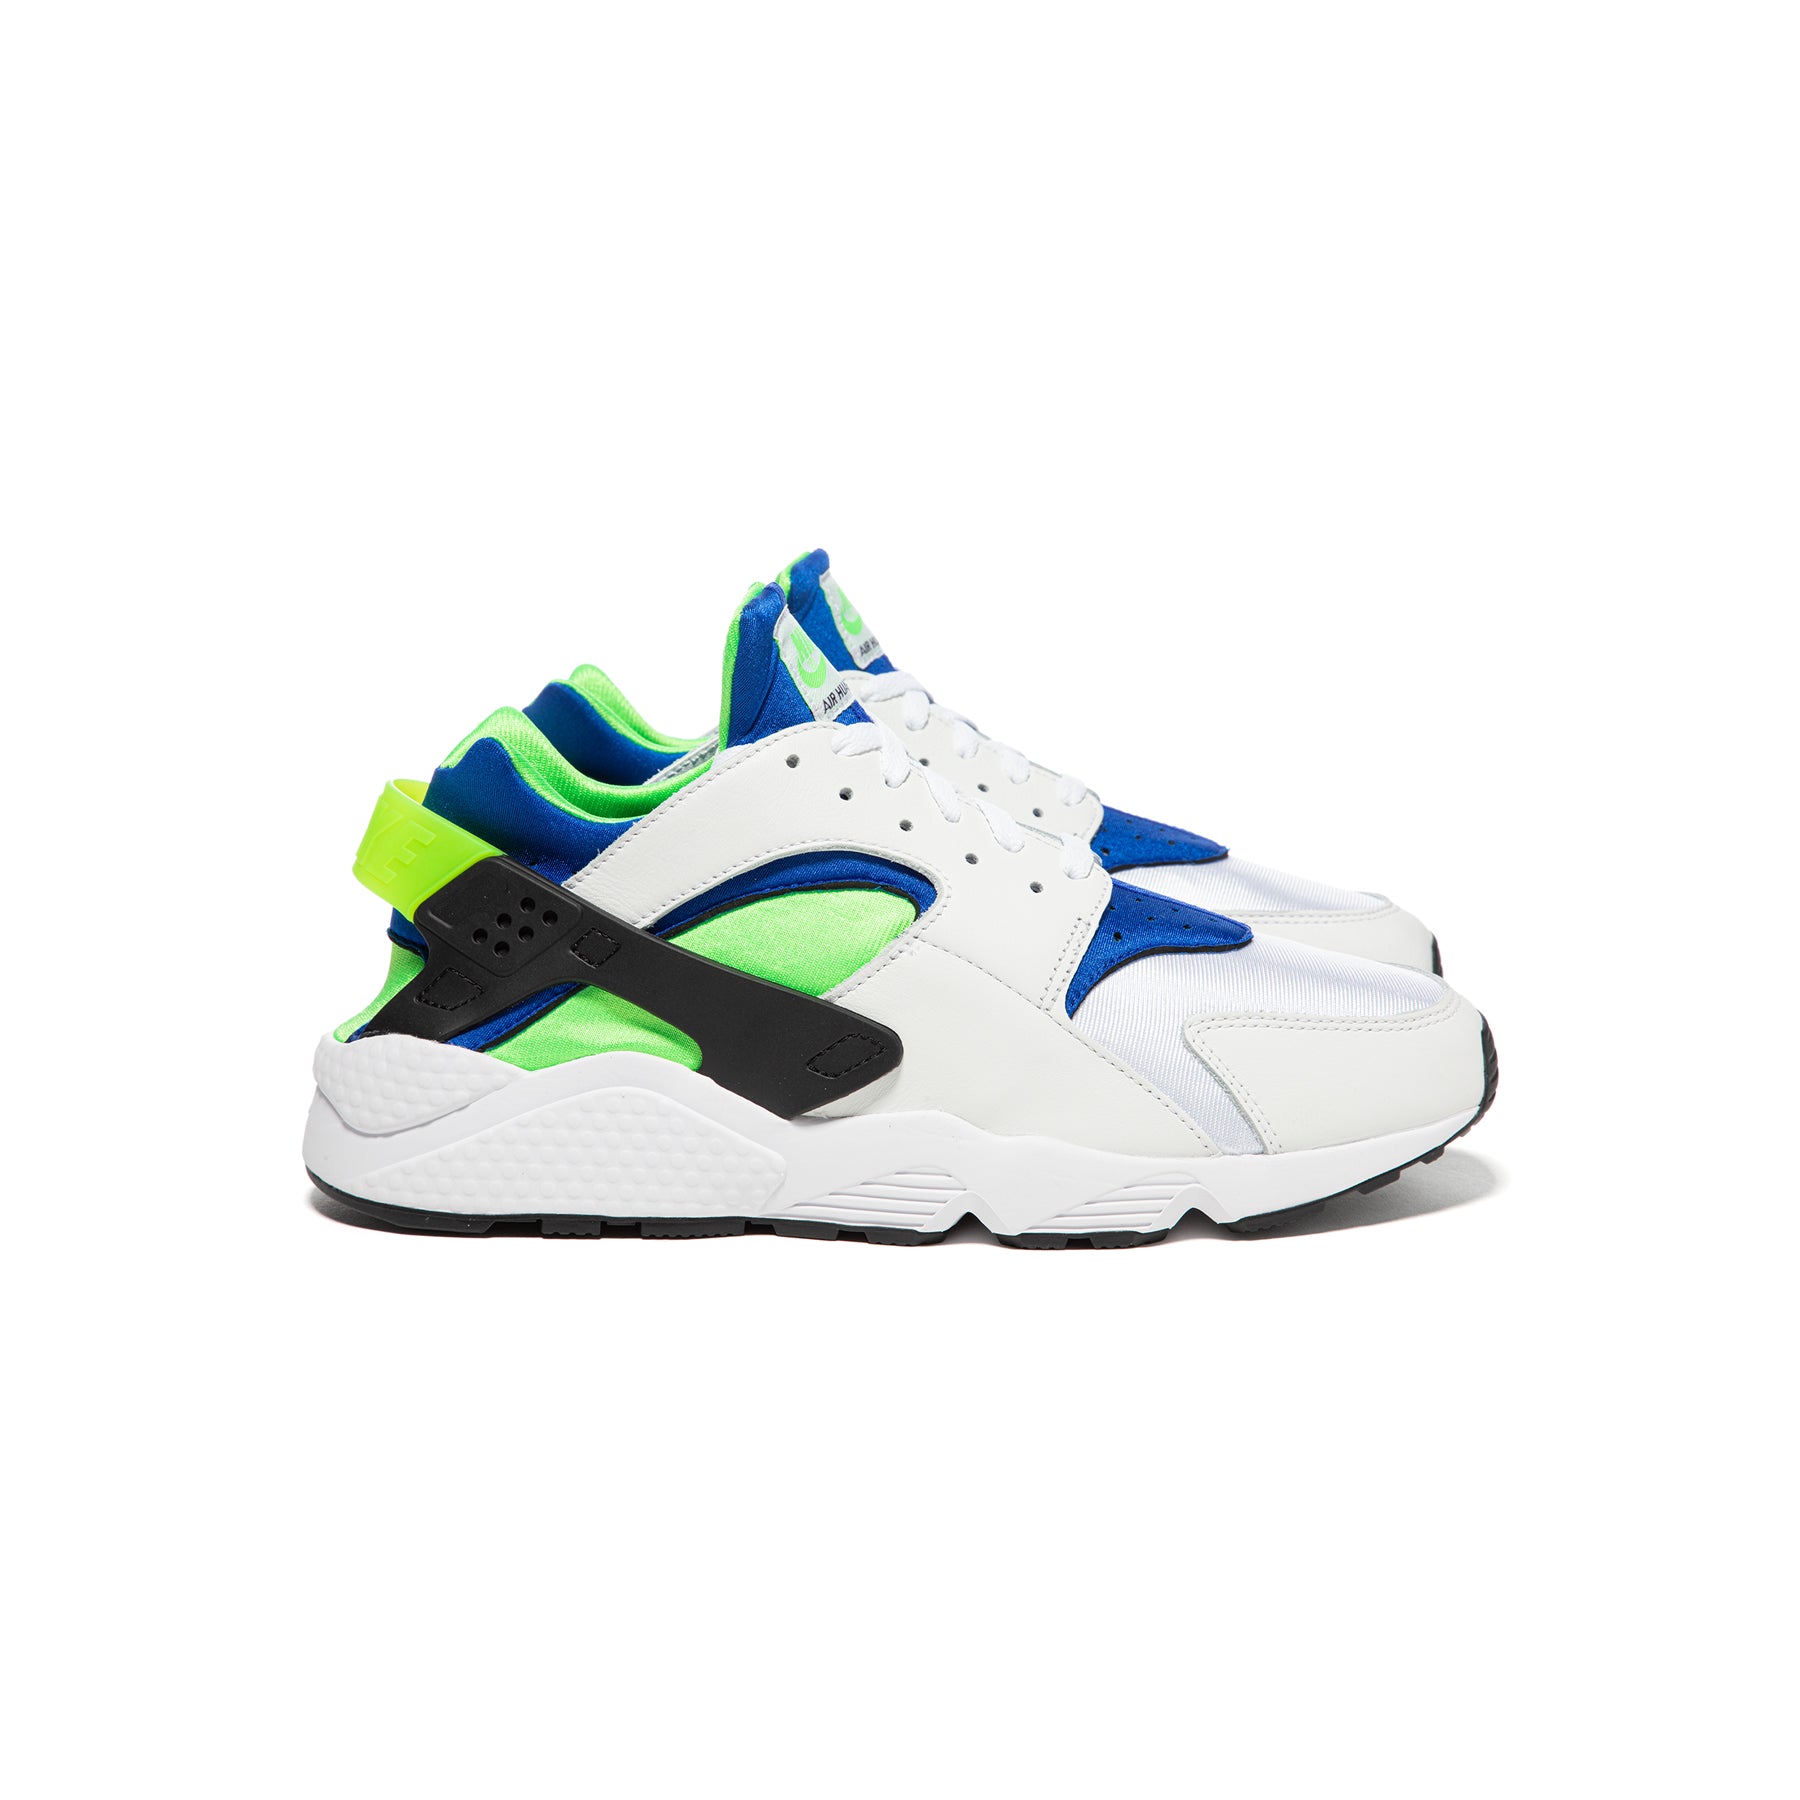 Nike Air Huarache Scream Green Shoes